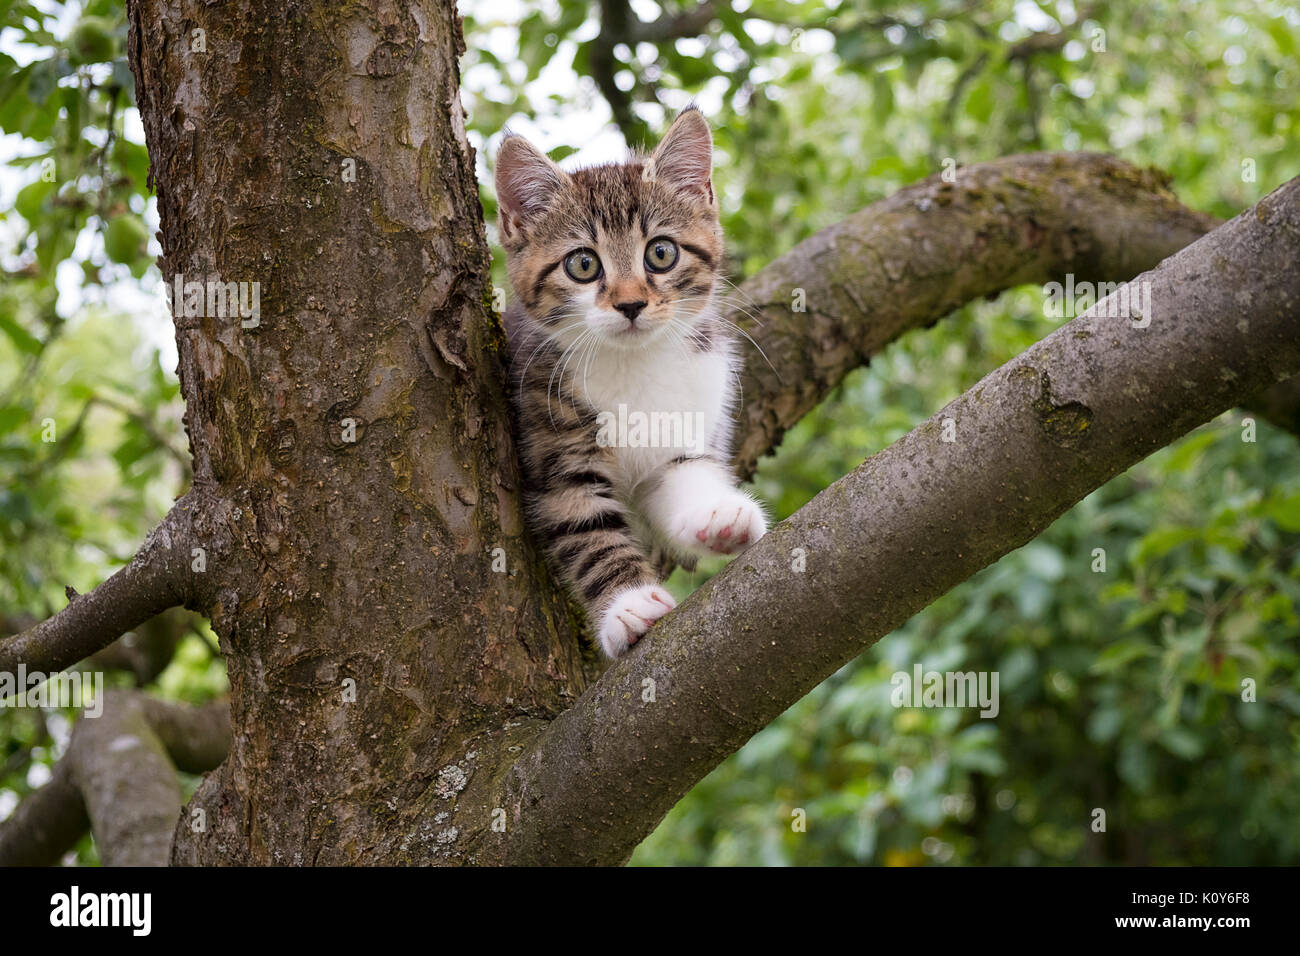 Kitten climbs on a tree Stock Photo